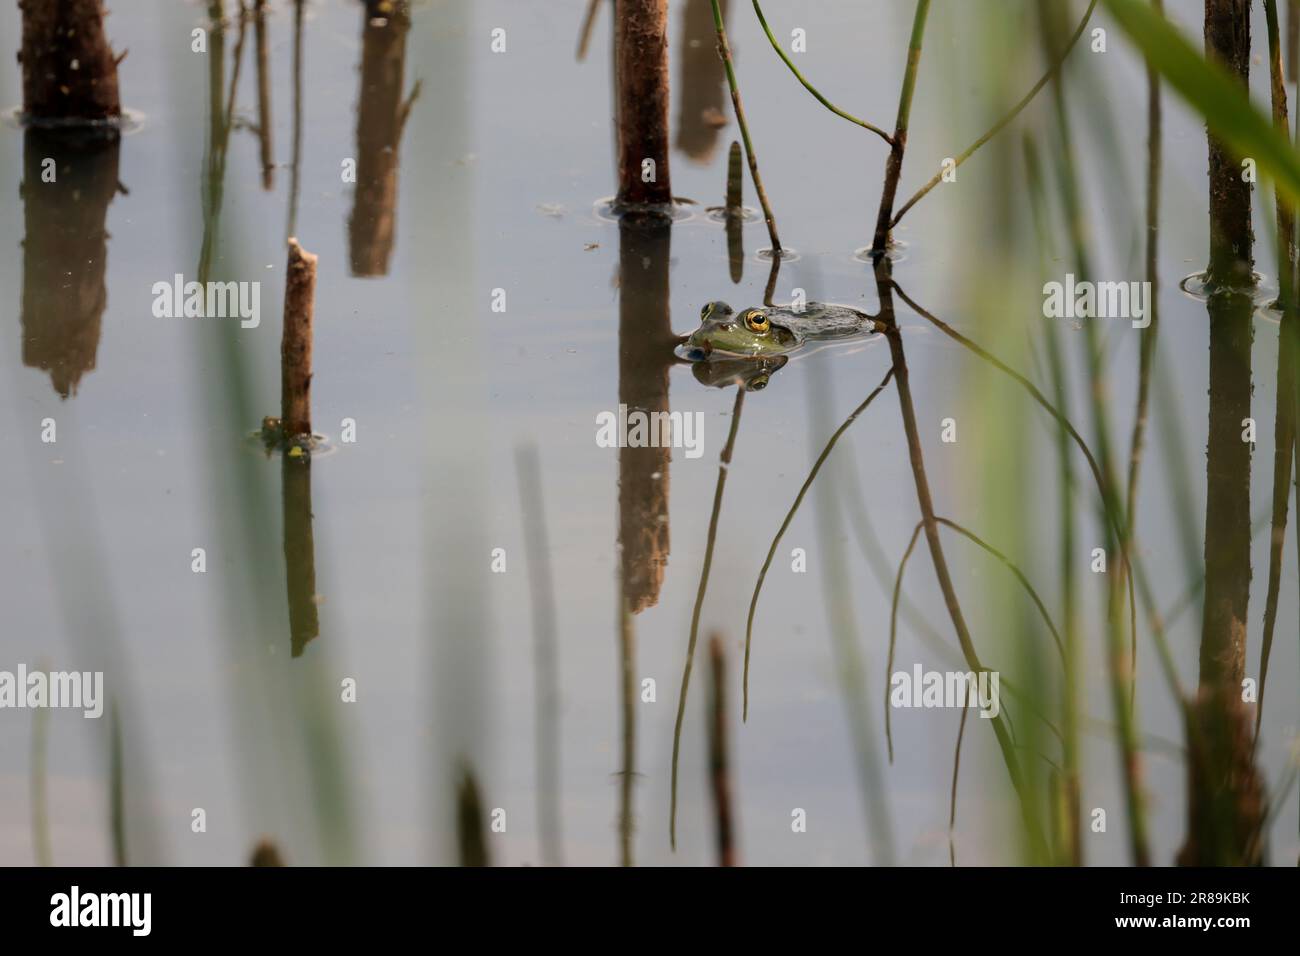 La grenouille de marais Rana ridibunda, dans le lac flottant parmi les roseaux et les yeux de végétation se ferment ensemble le corps verdâtre de museau pointu avec la réflexion de blotches sombres Banque D'Images